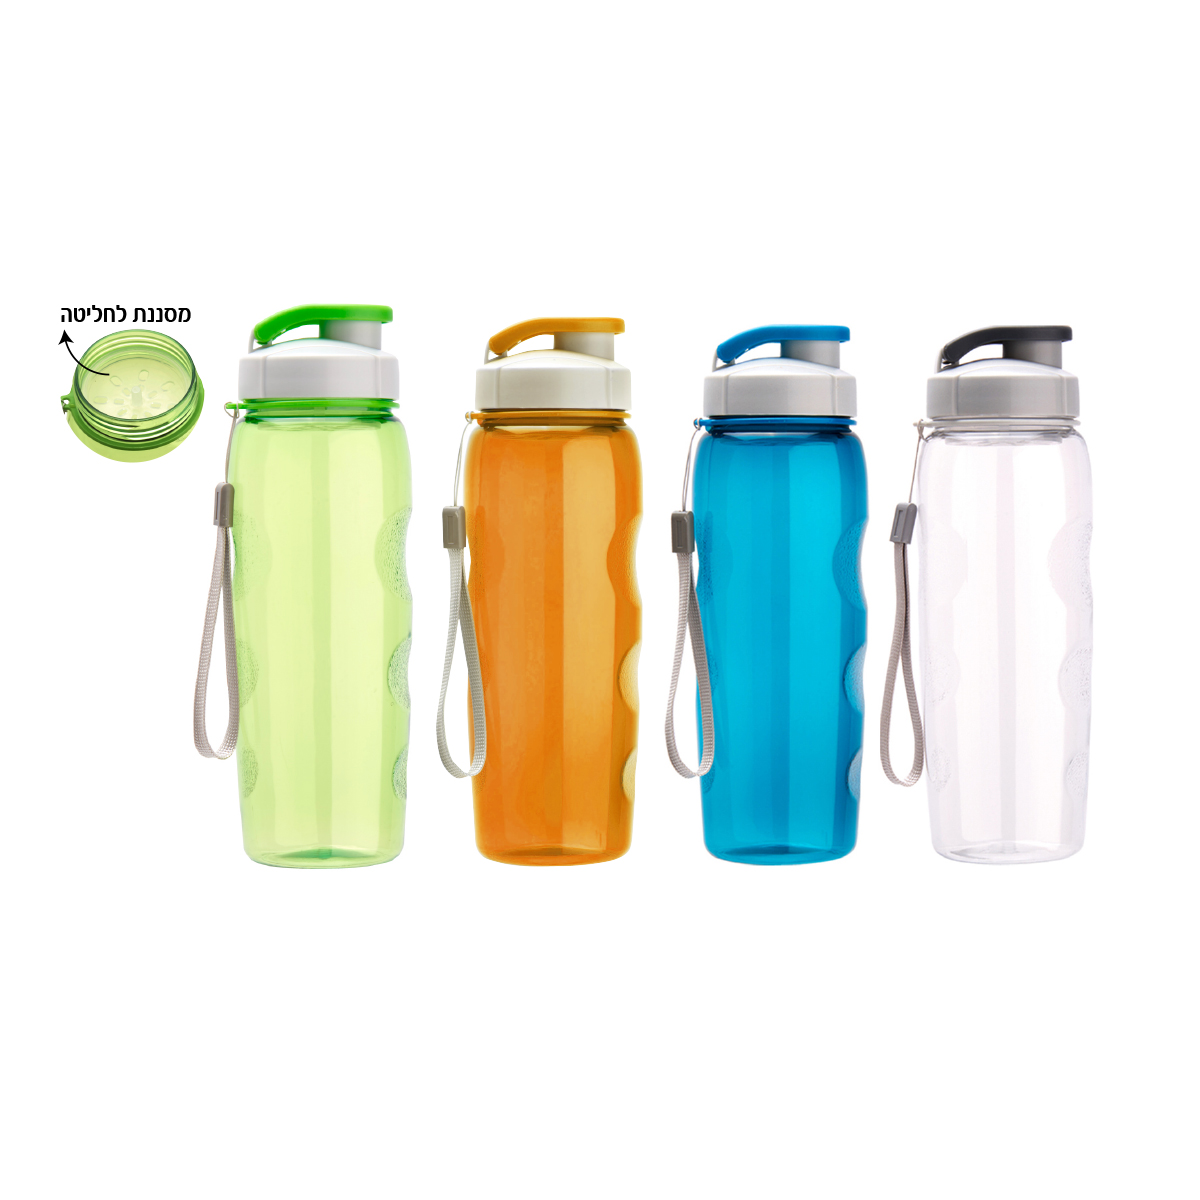 סמית - בקבוק שתיה 700 מ”ל גוף טריטאן, עם מסננת לחליטה ללא BPA.  
ידית אחיזה.  